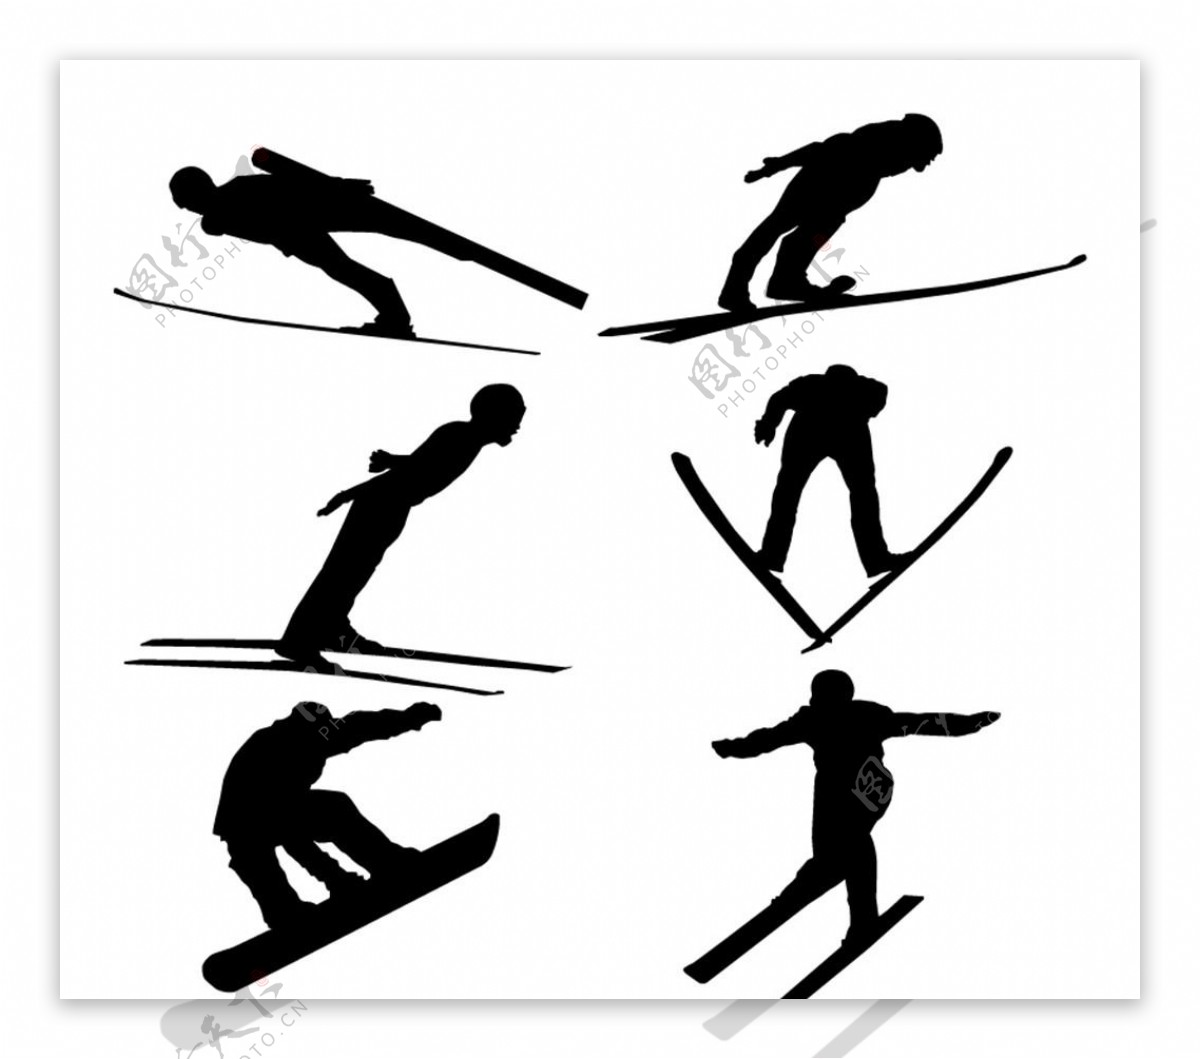 跳台滑雪人物剪影矢量素材